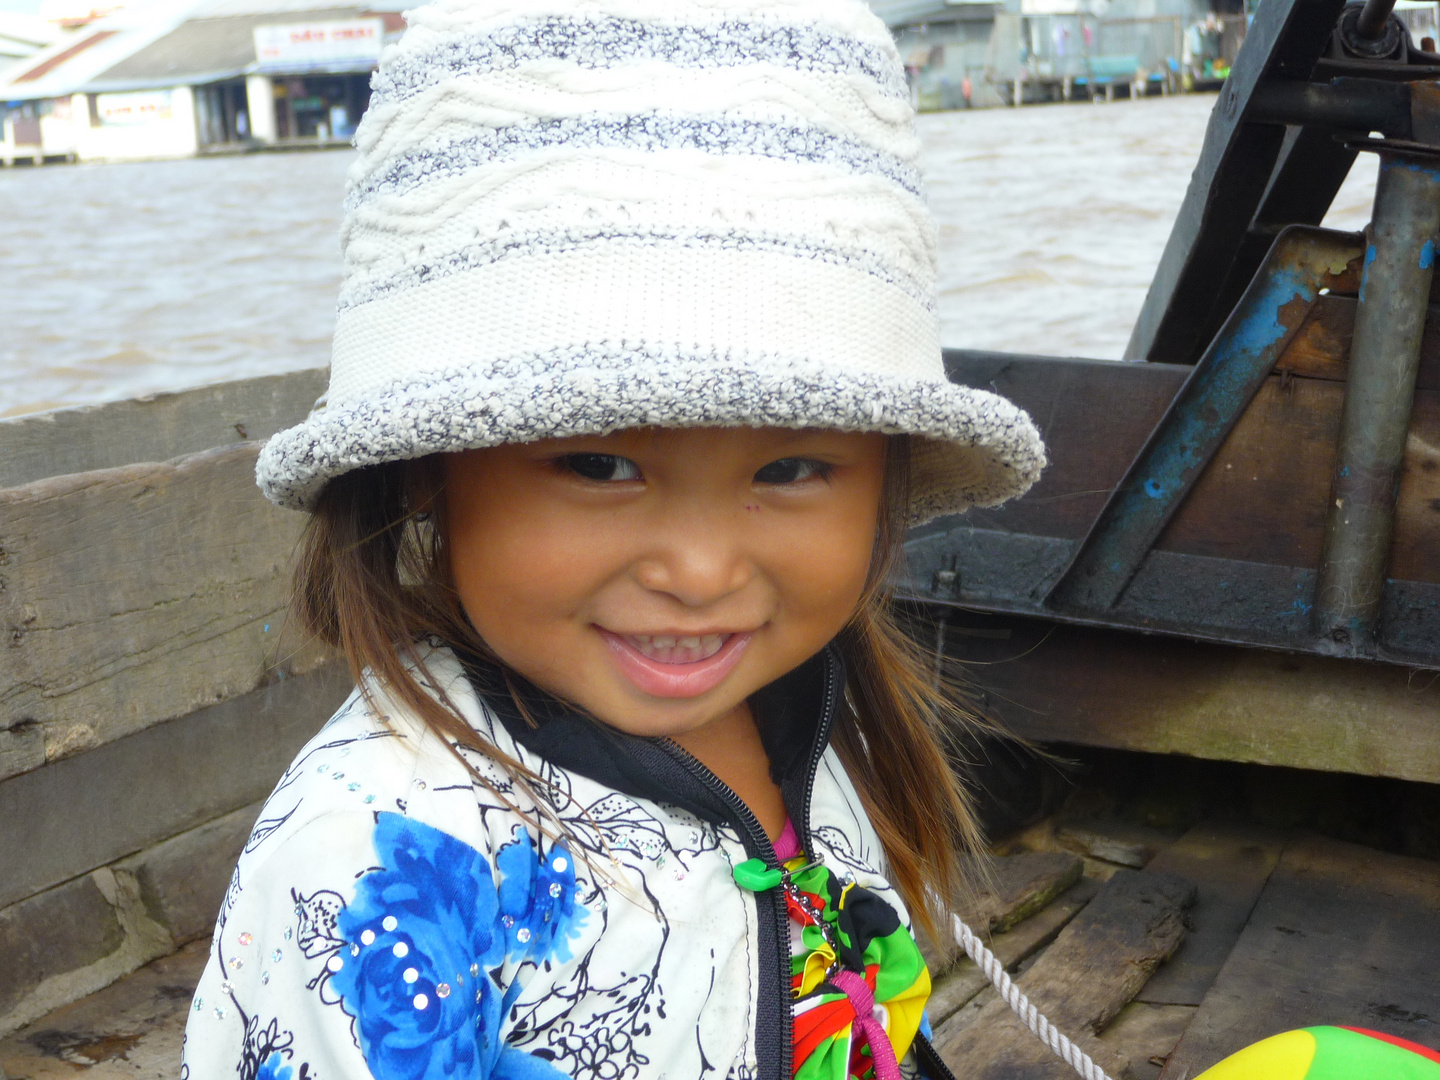 Travel through Vietnam - Mekong Delta 2